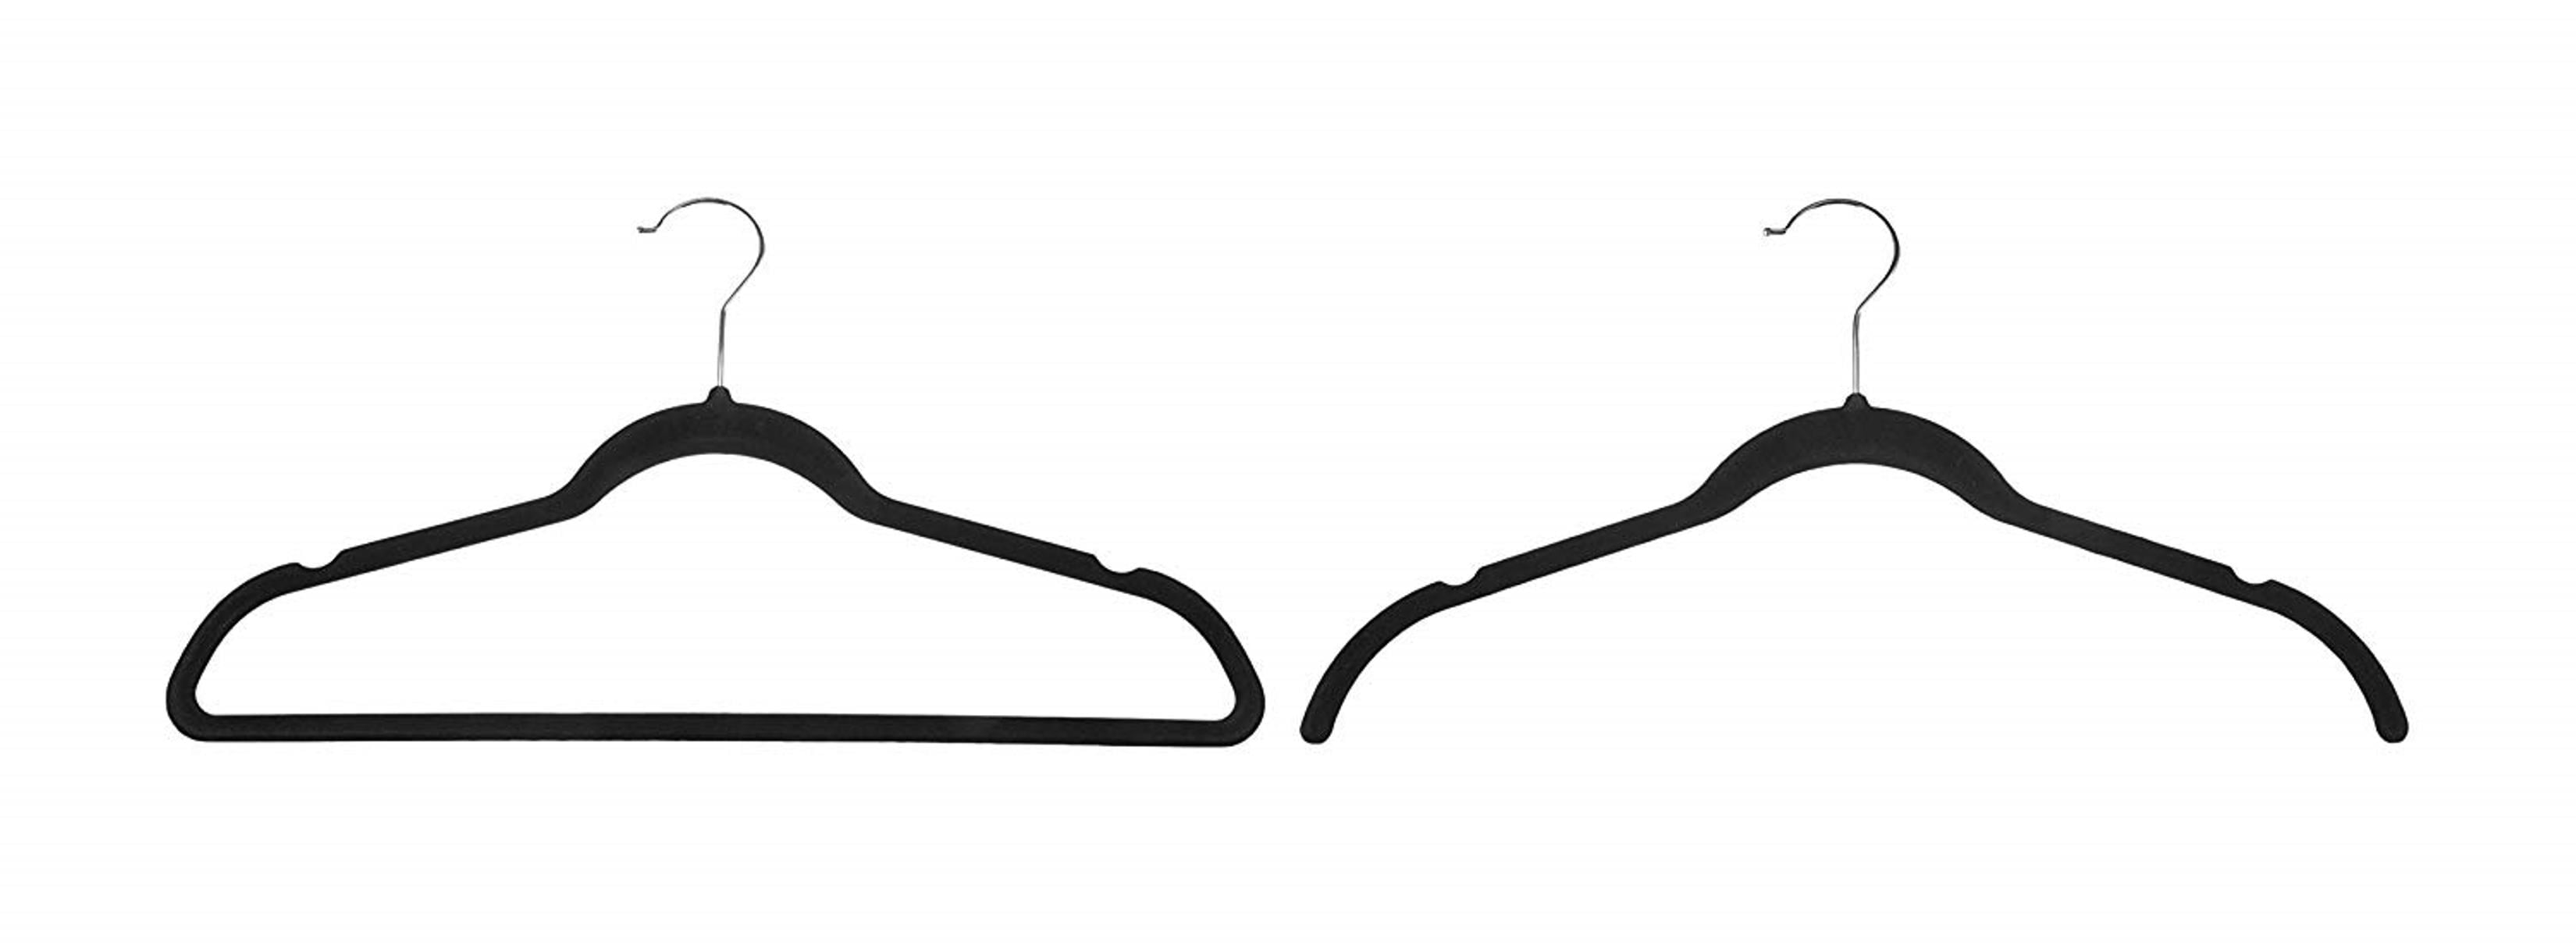 Black Velvet Hangers 17.5. Pack of 25 Thin Hangers Non Slip Velvet